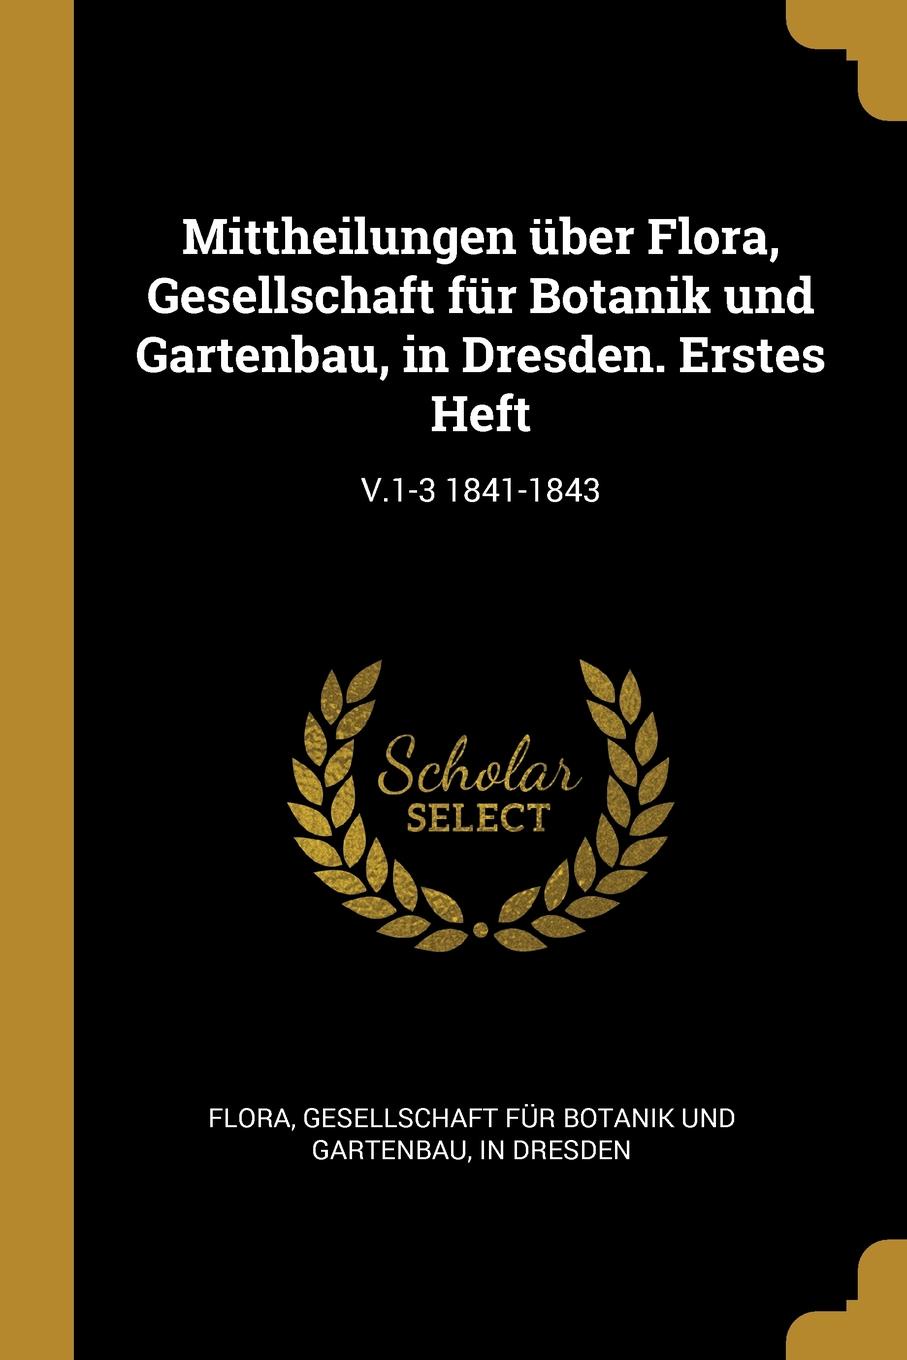 фото Mittheilungen uber Flora, Gesellschaft fur Botanik und Gartenbau, in Dresden. Erstes Heft. V.1-3 1841-1843